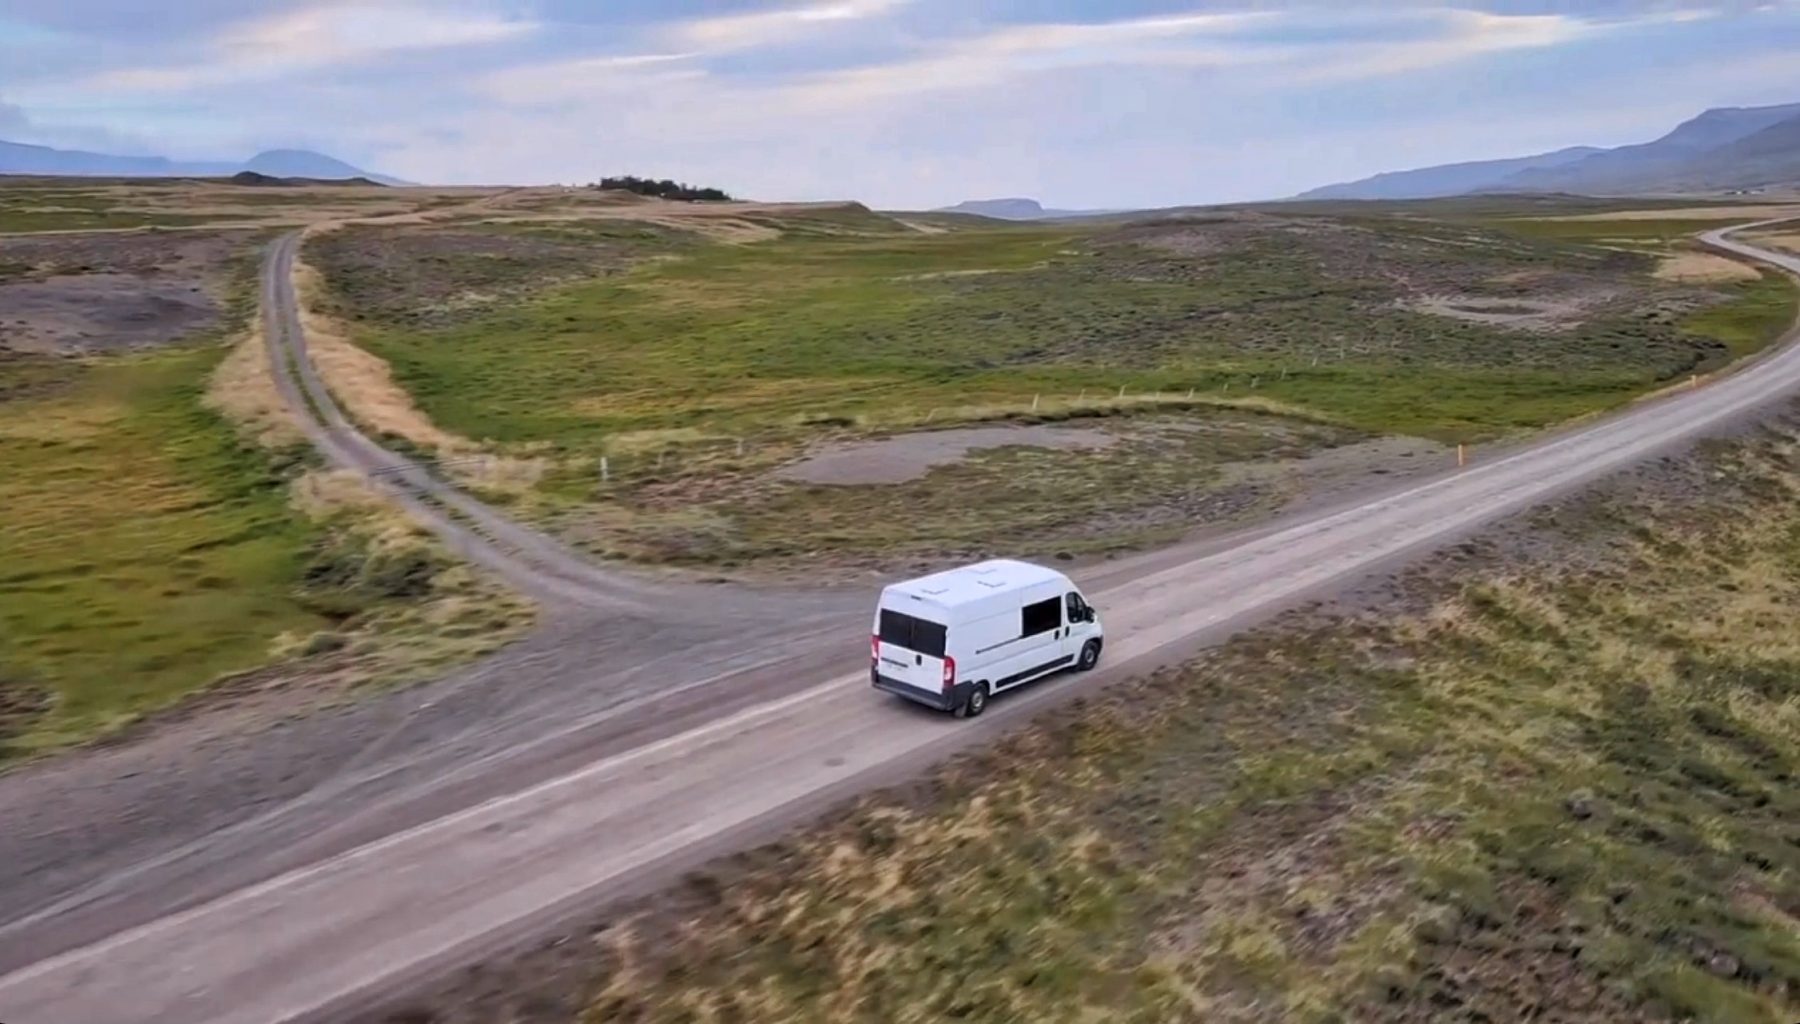 Recorriendo Islandia en furgoneta camper. Planificación y preparativos de viaje a Islandia